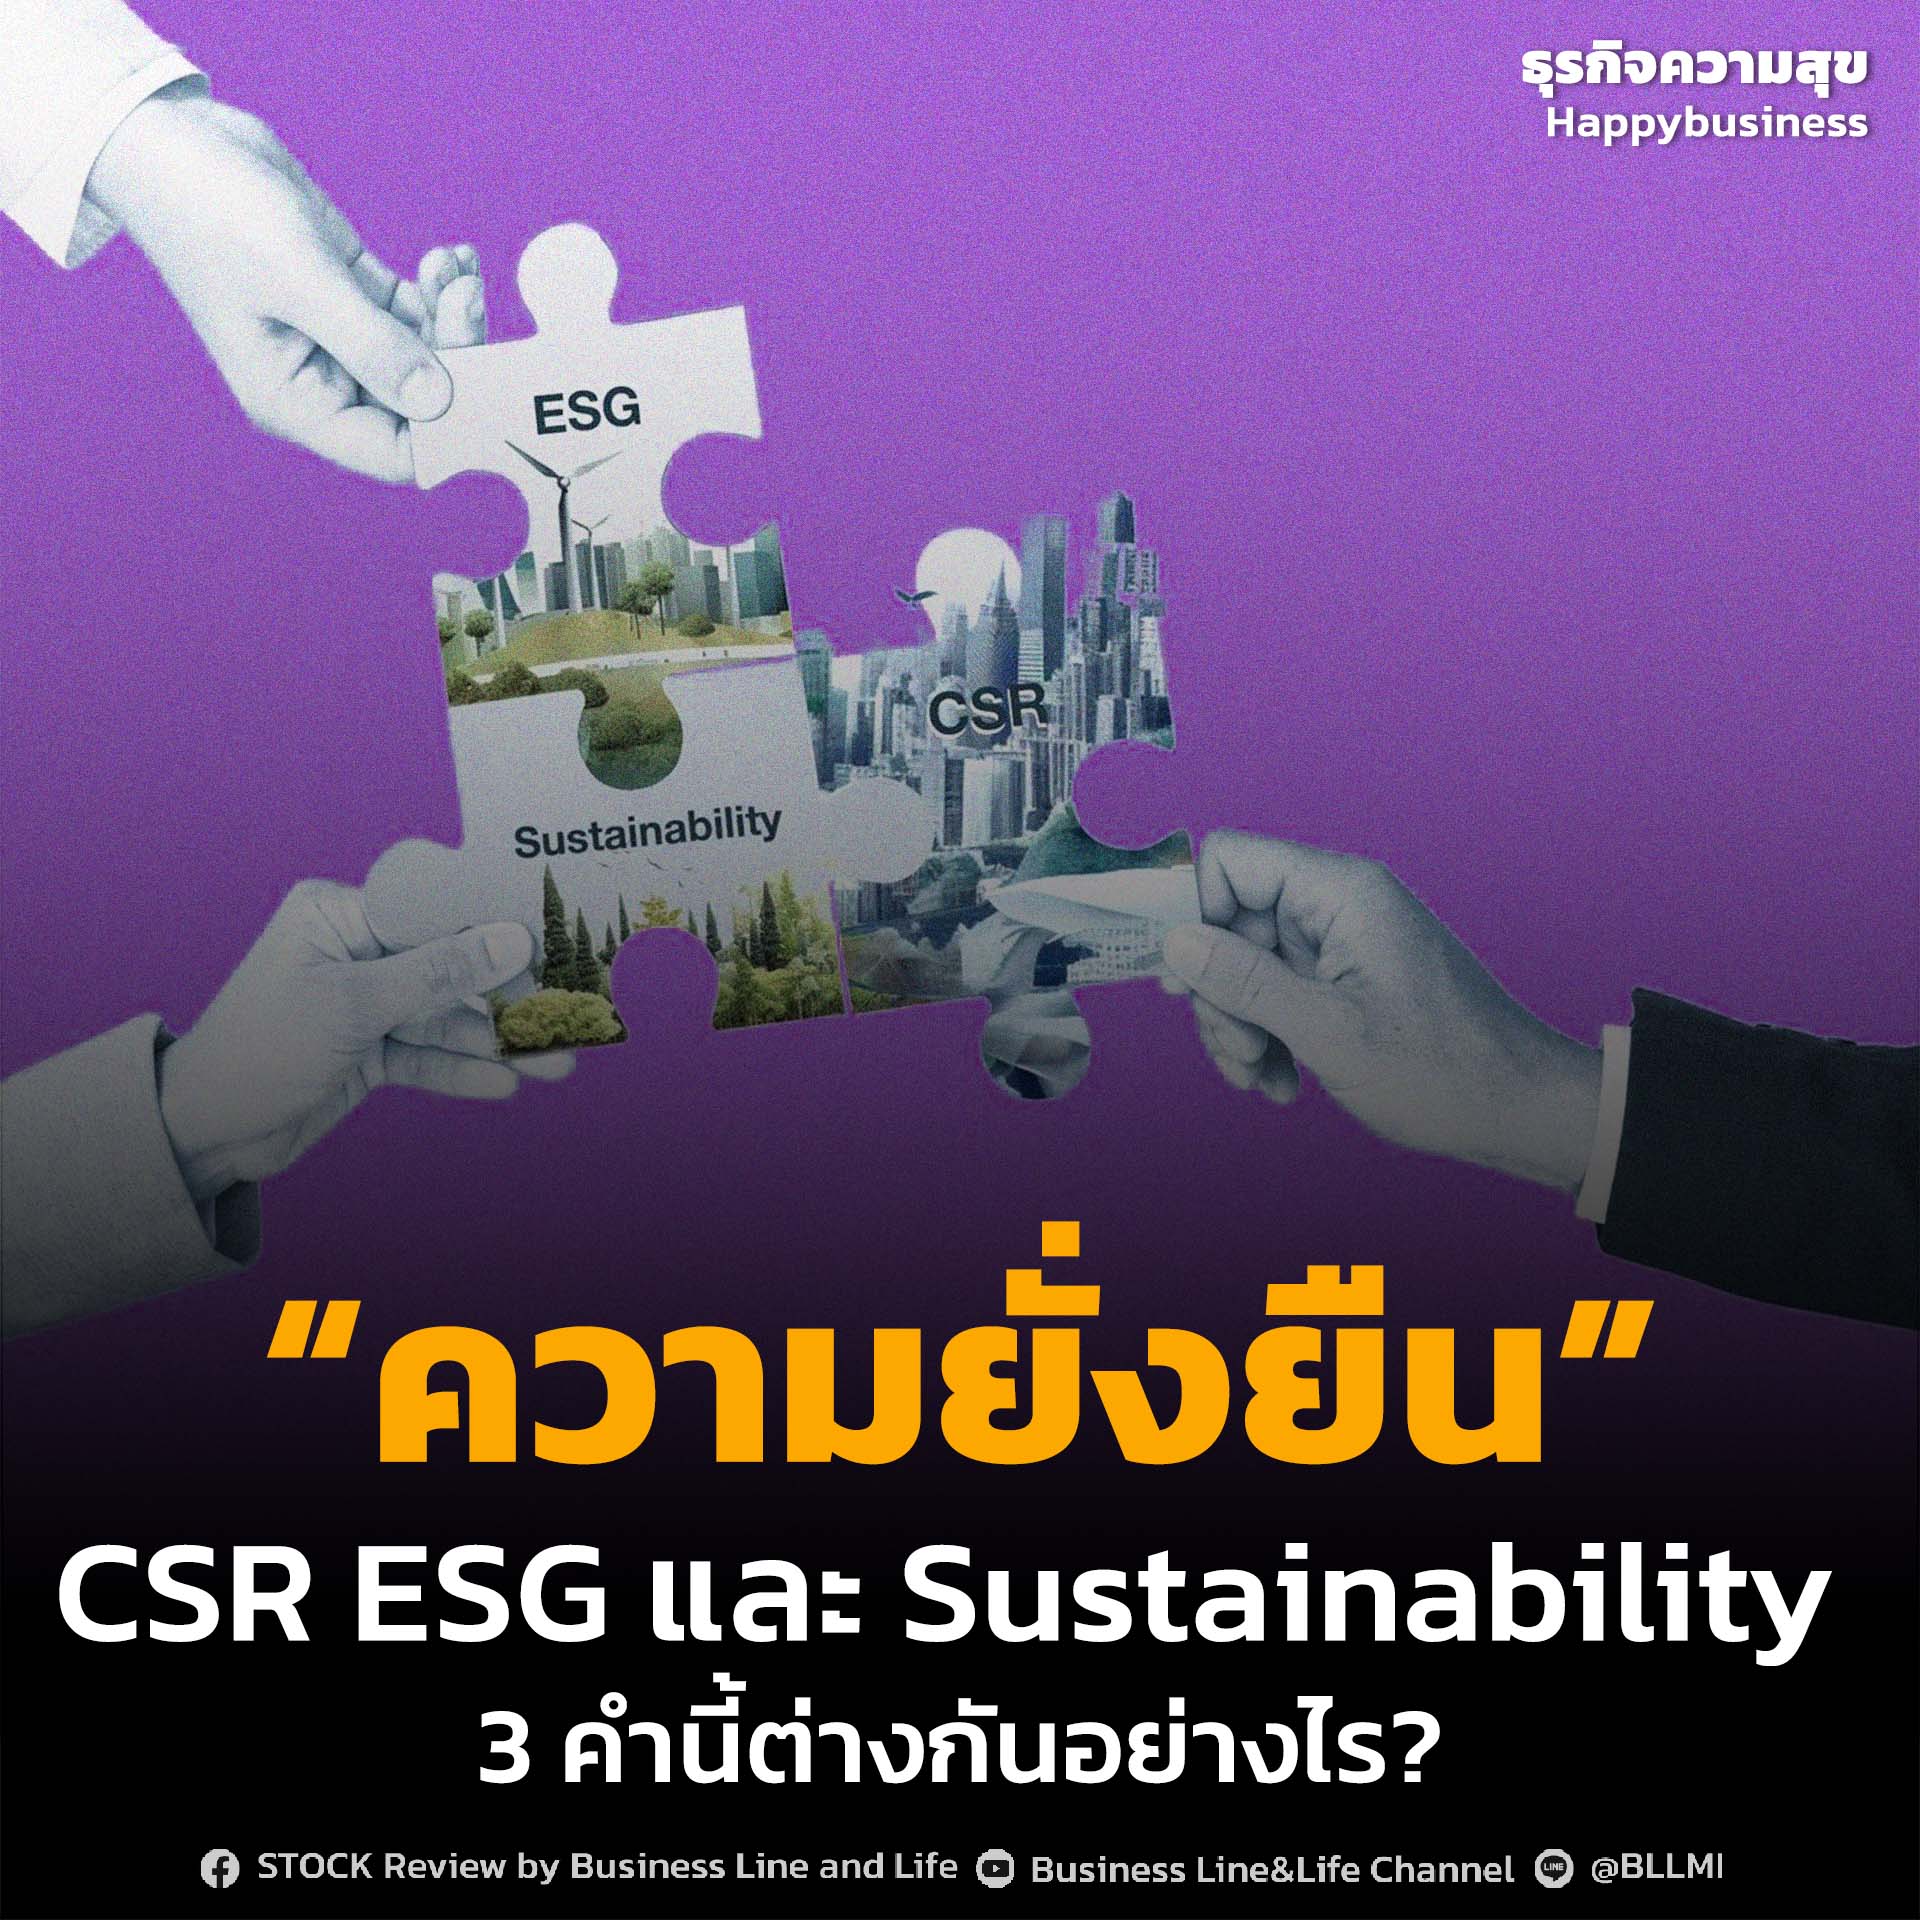 เรื่องความยั่งยืน  CSR ESG และ Sustainability 3 คำนี้ต่างกันอย่างไร?